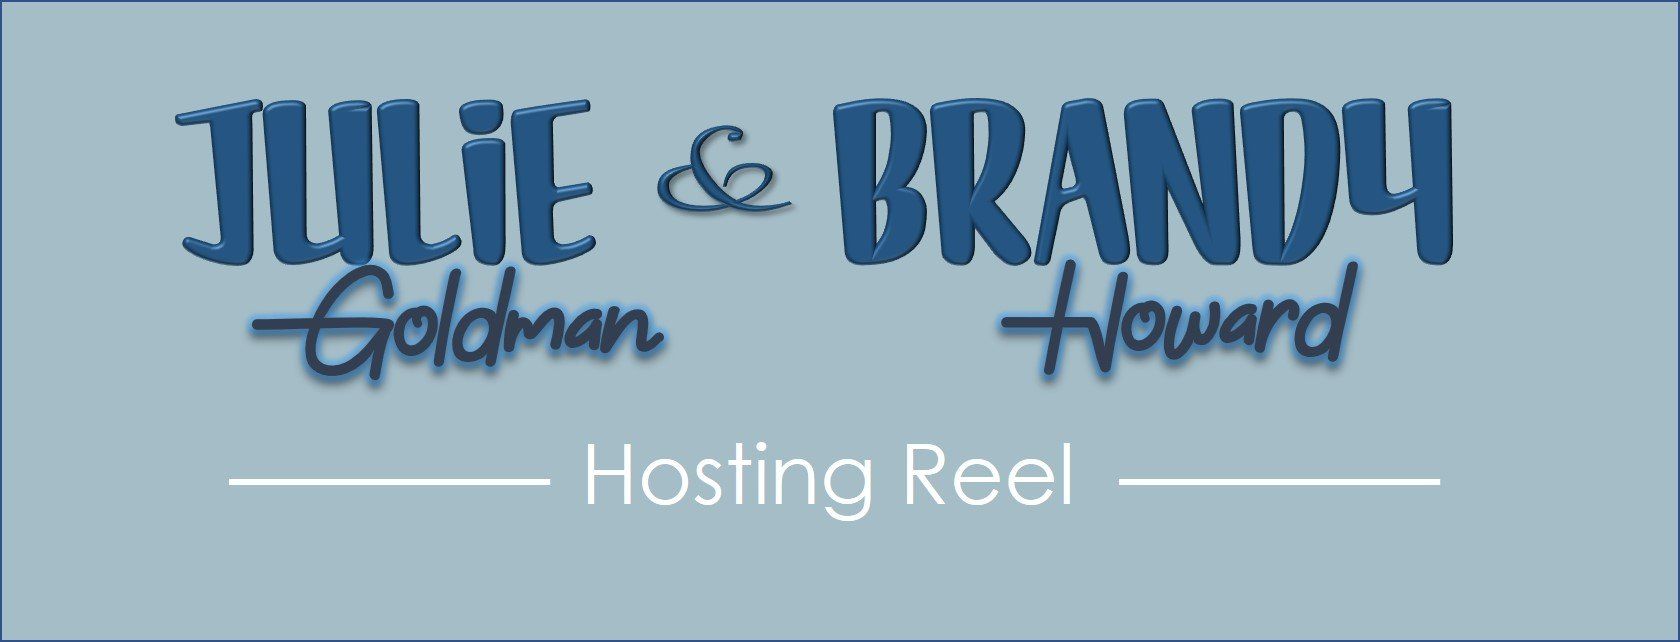 Brandy Howard Julie Goldman Hosting Reel